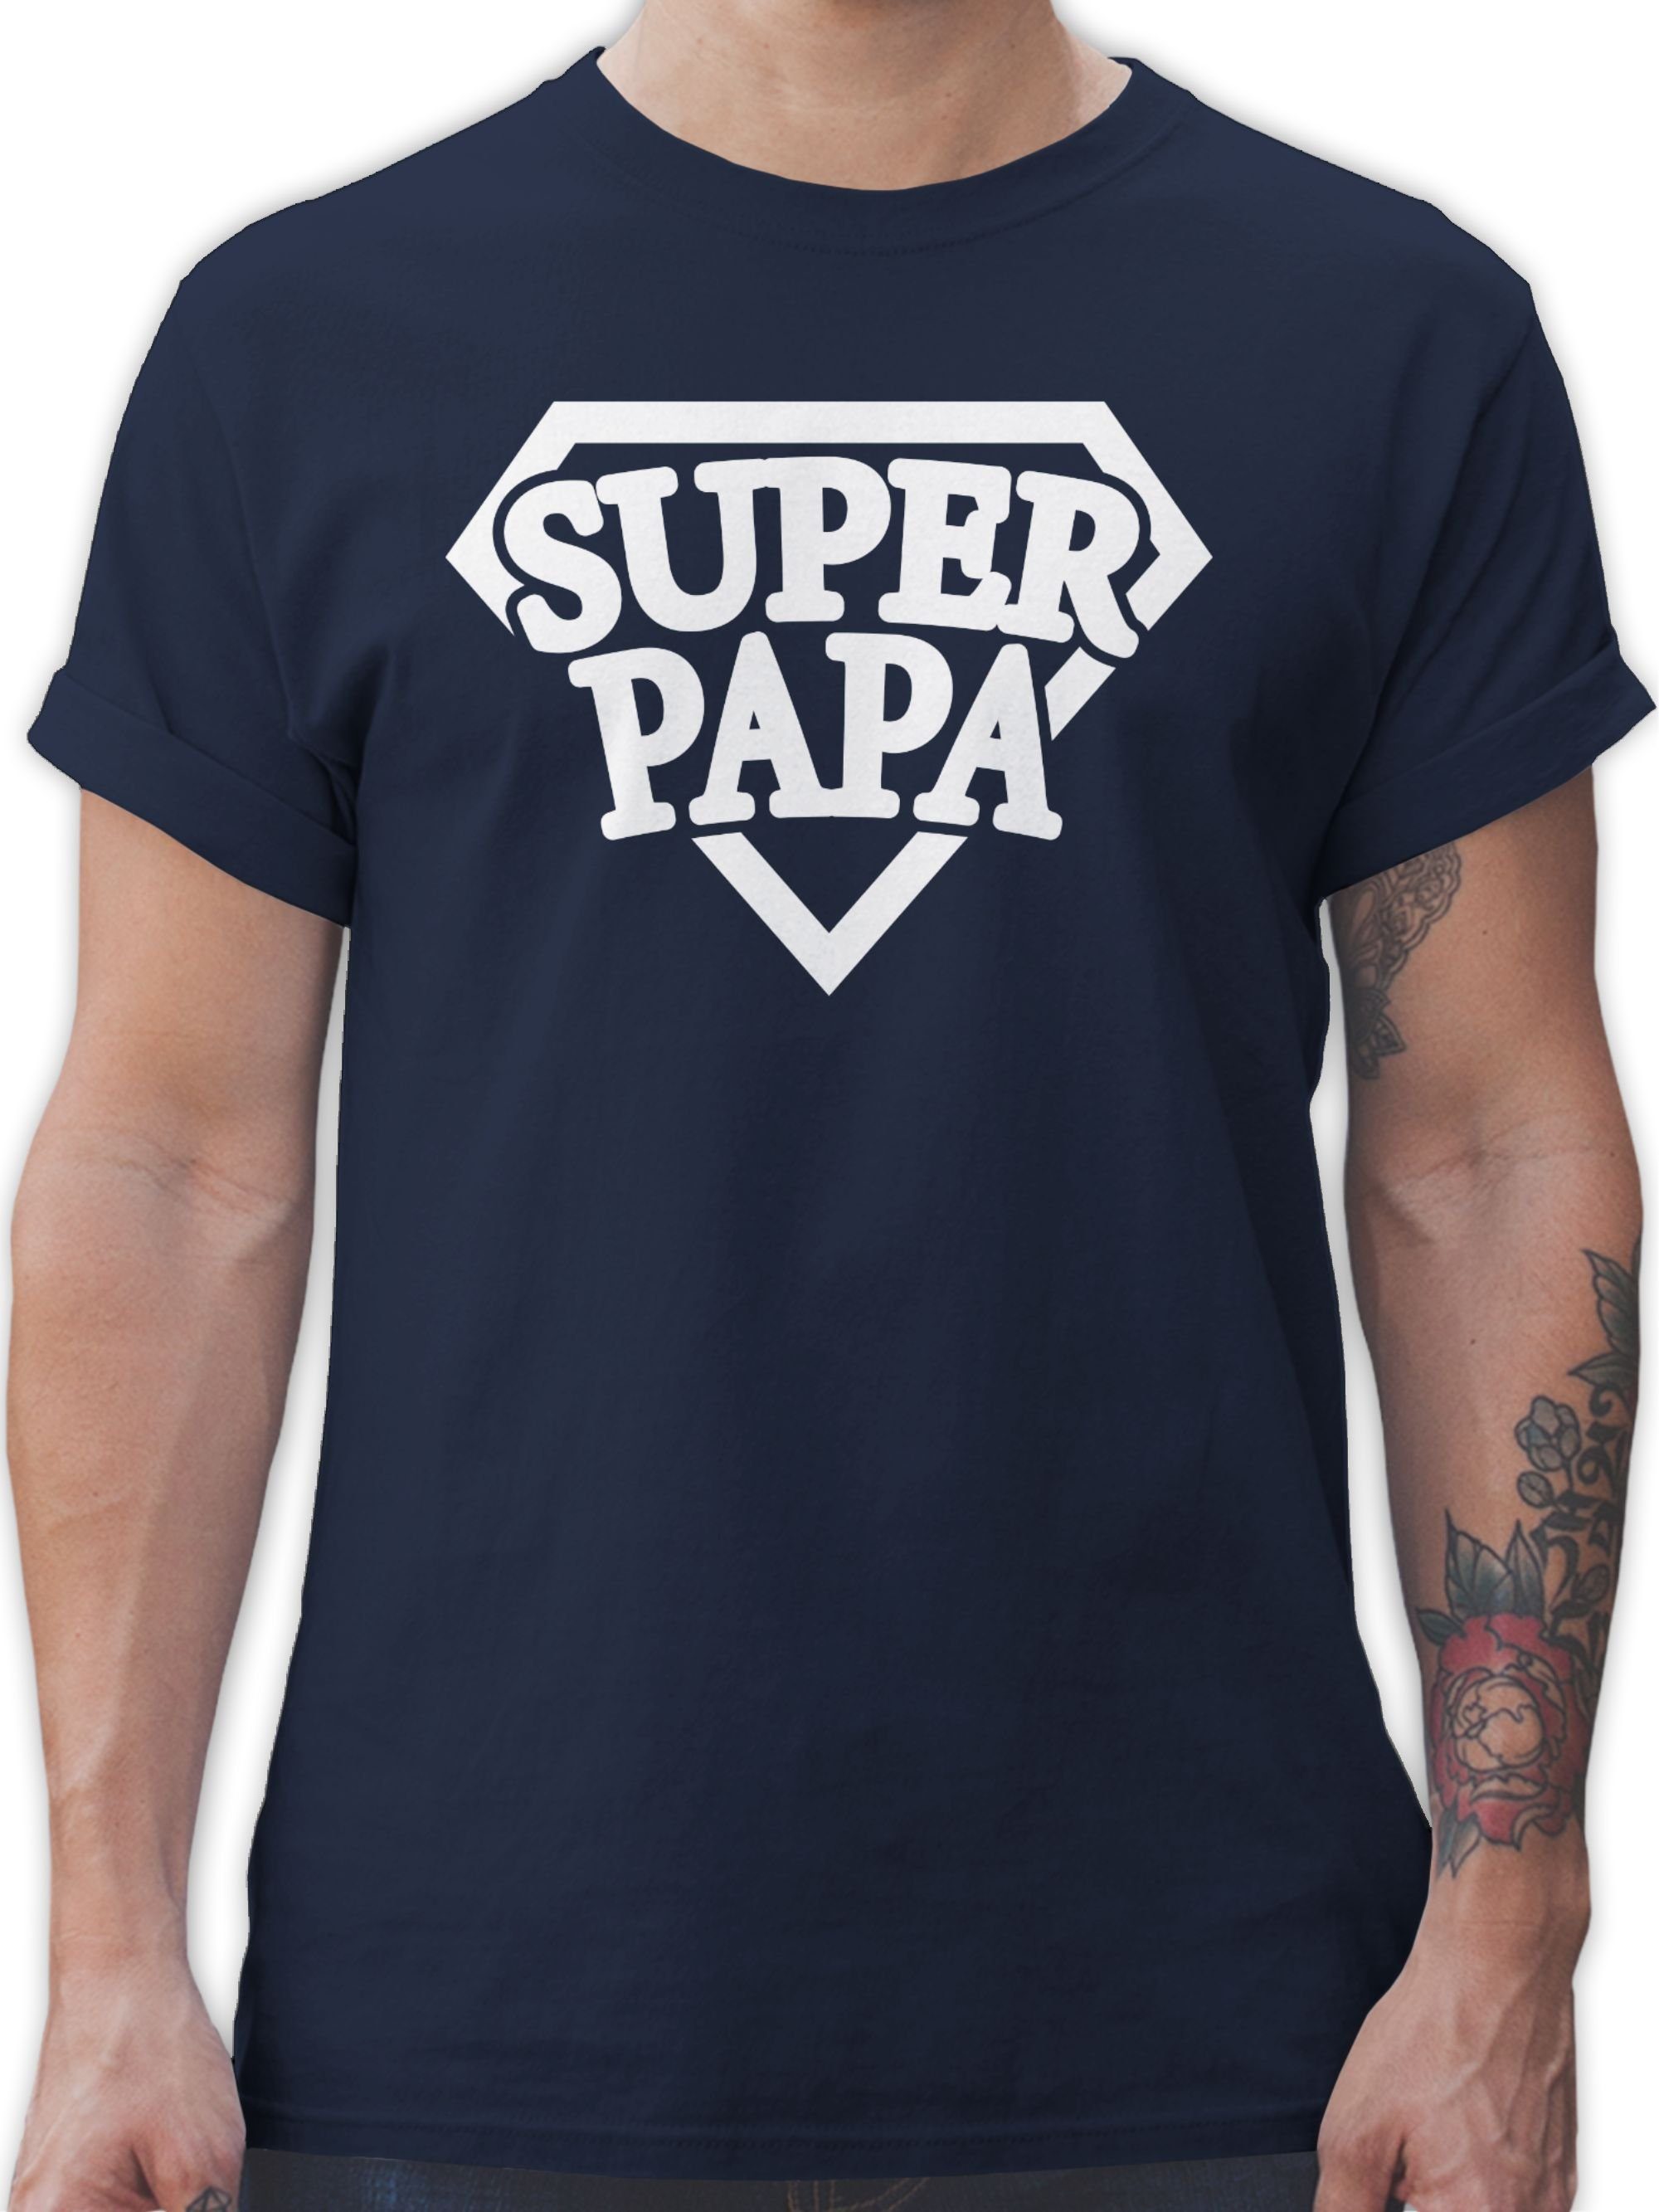 Papa Superheld Papa Shirtracer Vatertag Geschenk für T-Shirt - Super 2 Navy Blau